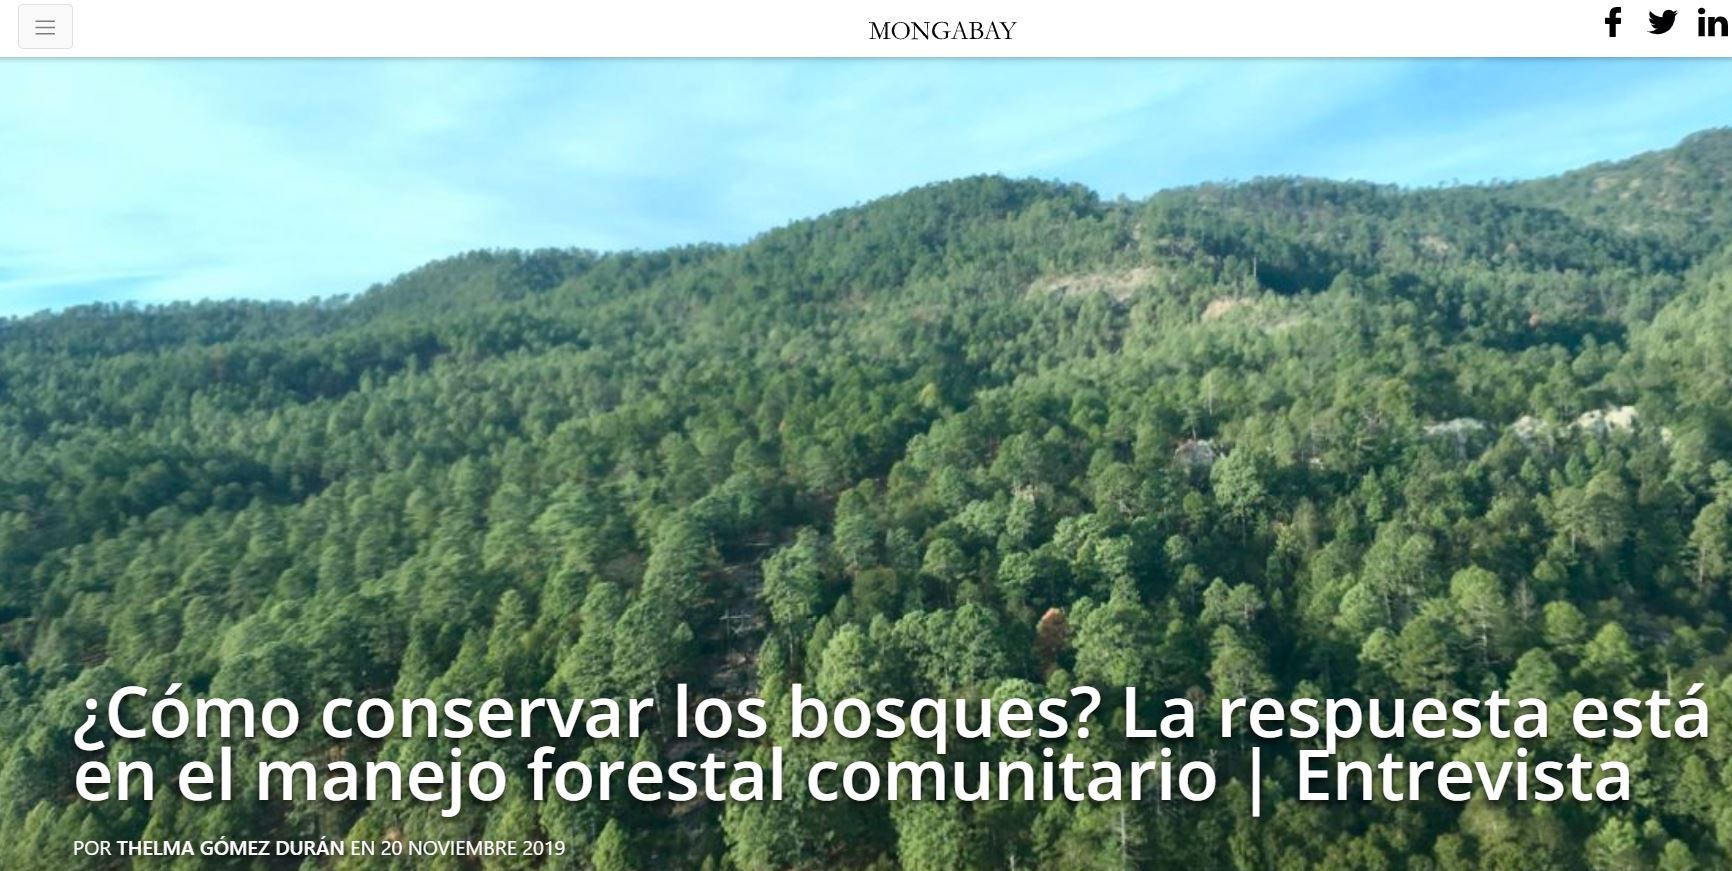 ¿Cómo conservar los bosques? La respuesta está en el manejo forestal comunitario